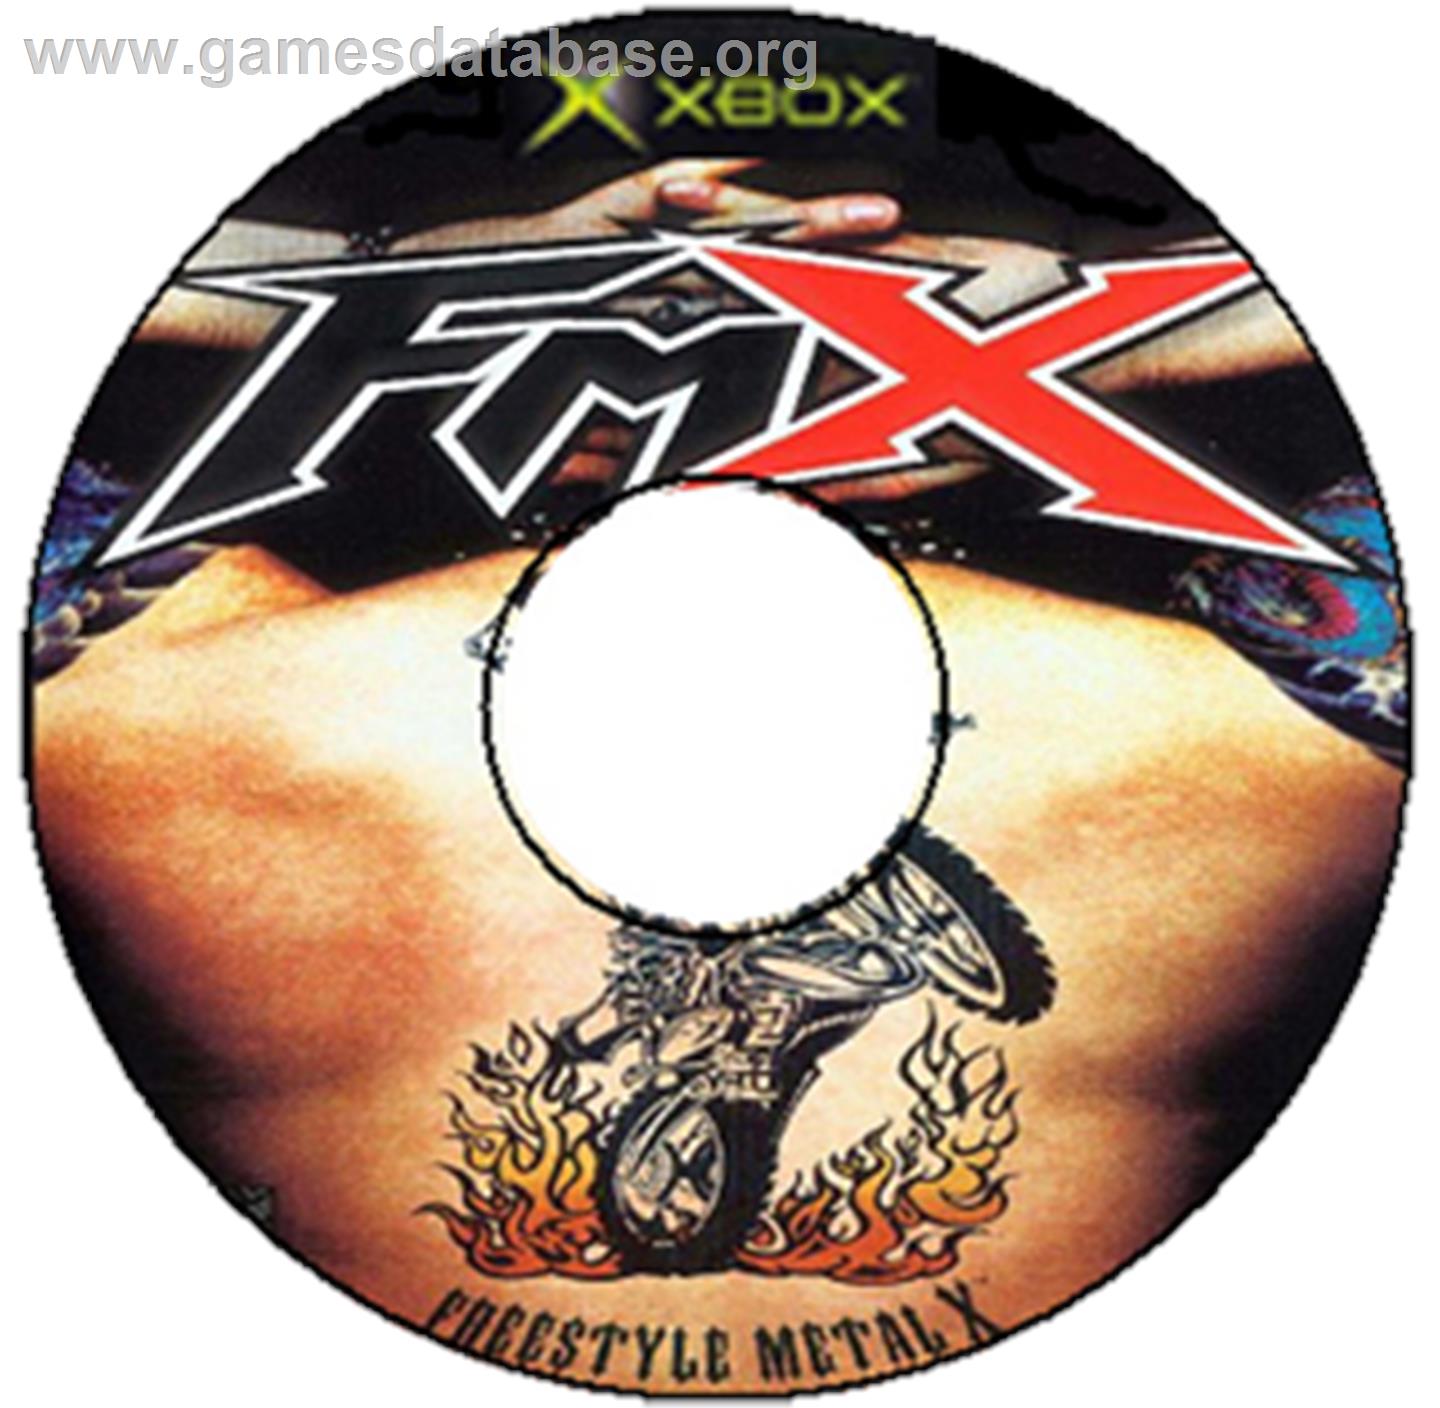 Freestyle MetalX - Microsoft Xbox - Artwork - CD